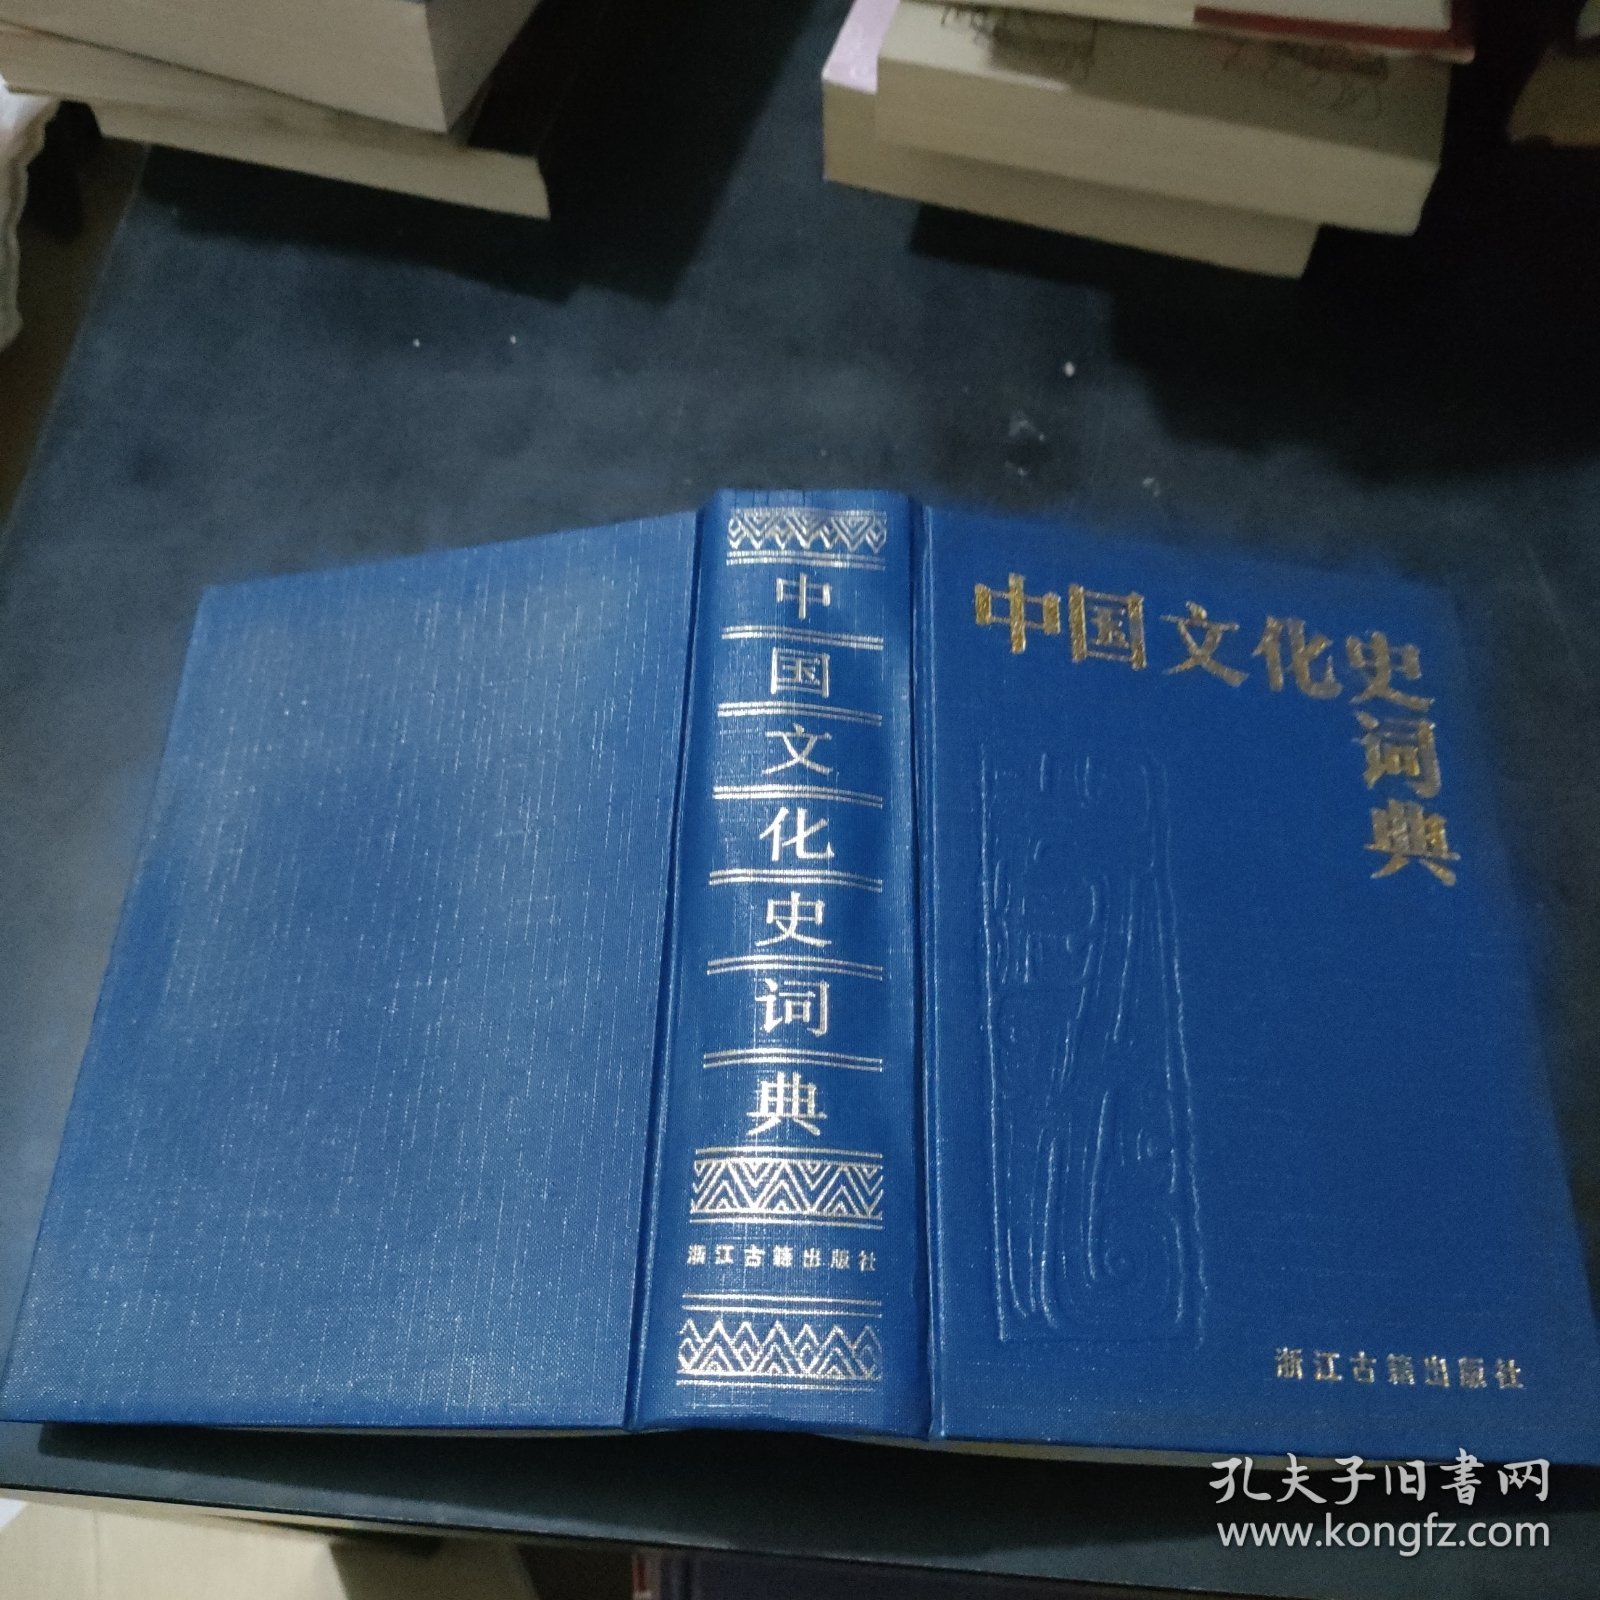 中国文化史词典